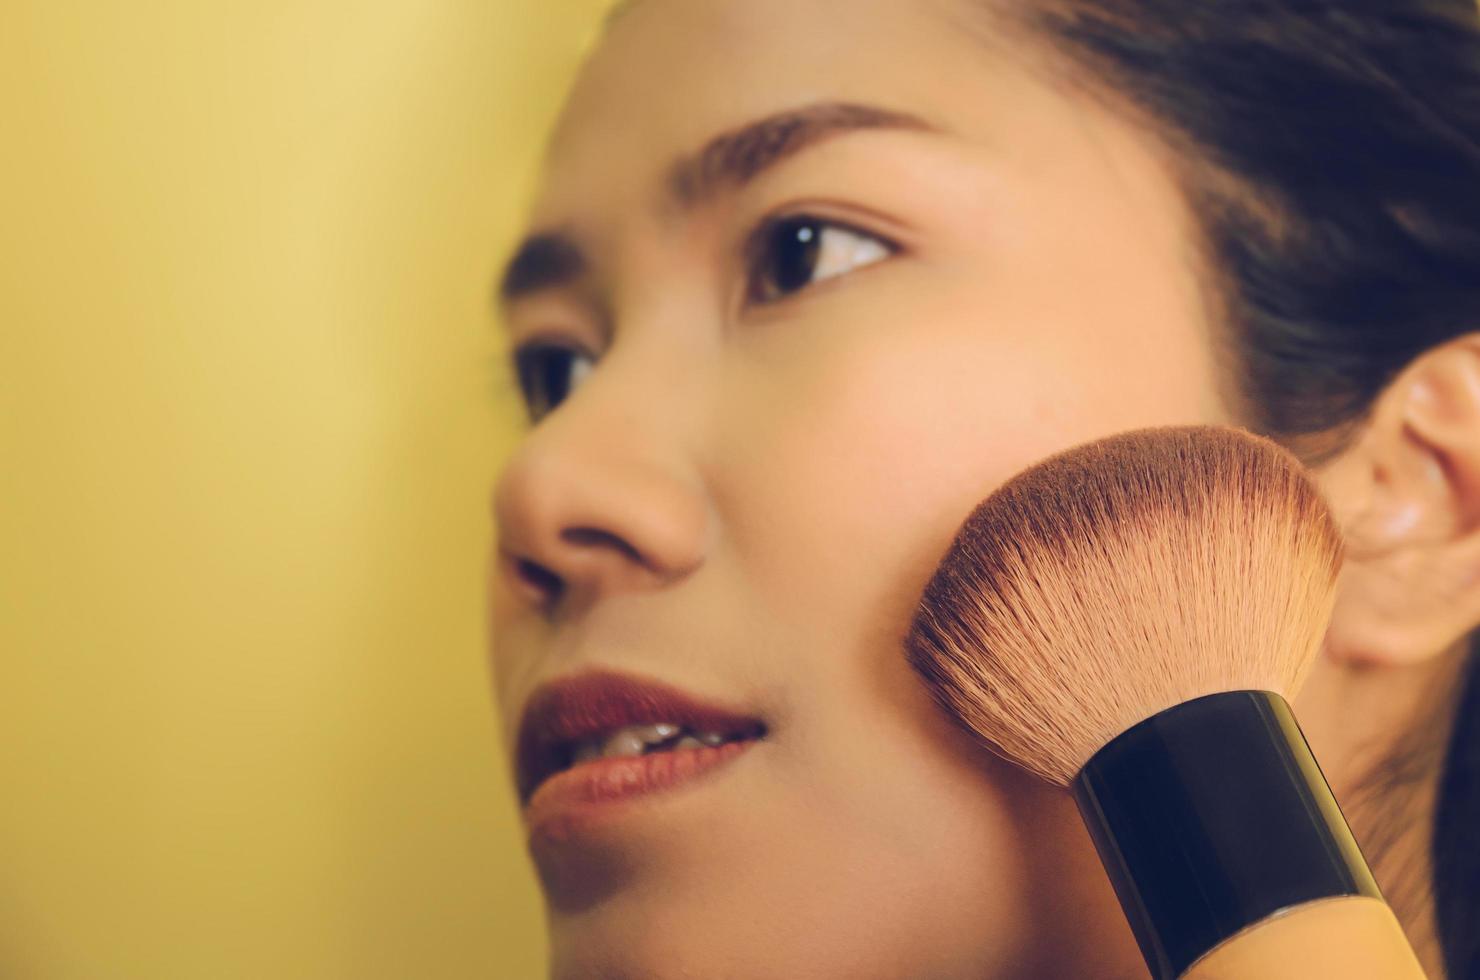 Schönheitsgesicht der asiatischen Frau durch Auftragen von Bürsten auf die Haut durch Kosmetik. foto